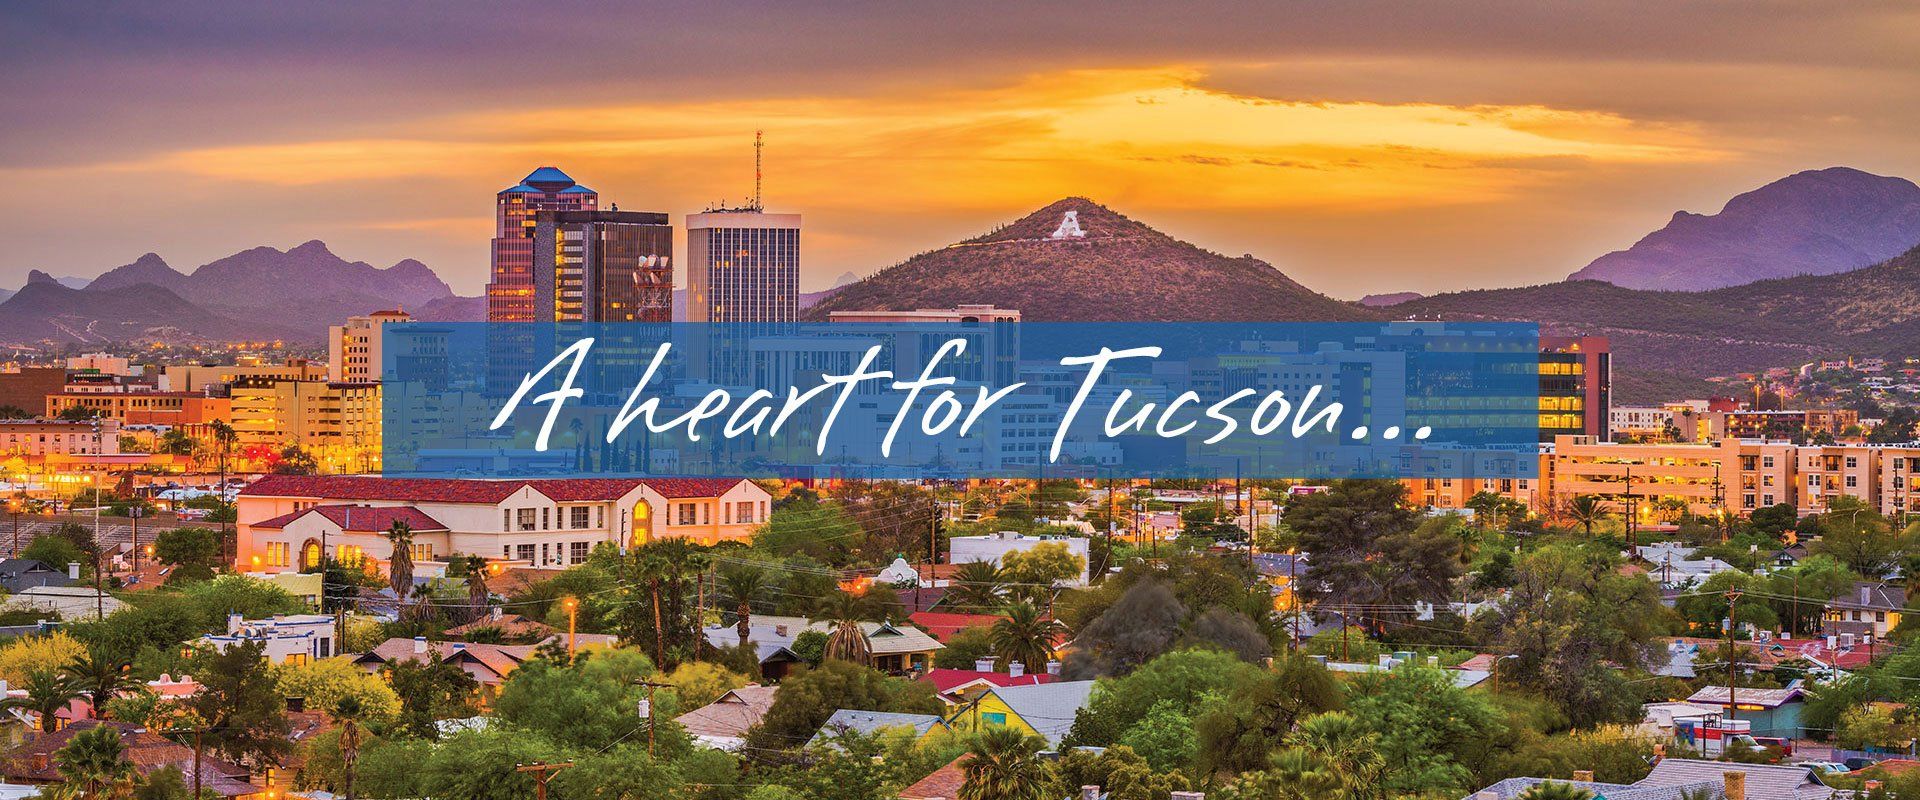 Heart for Tucson